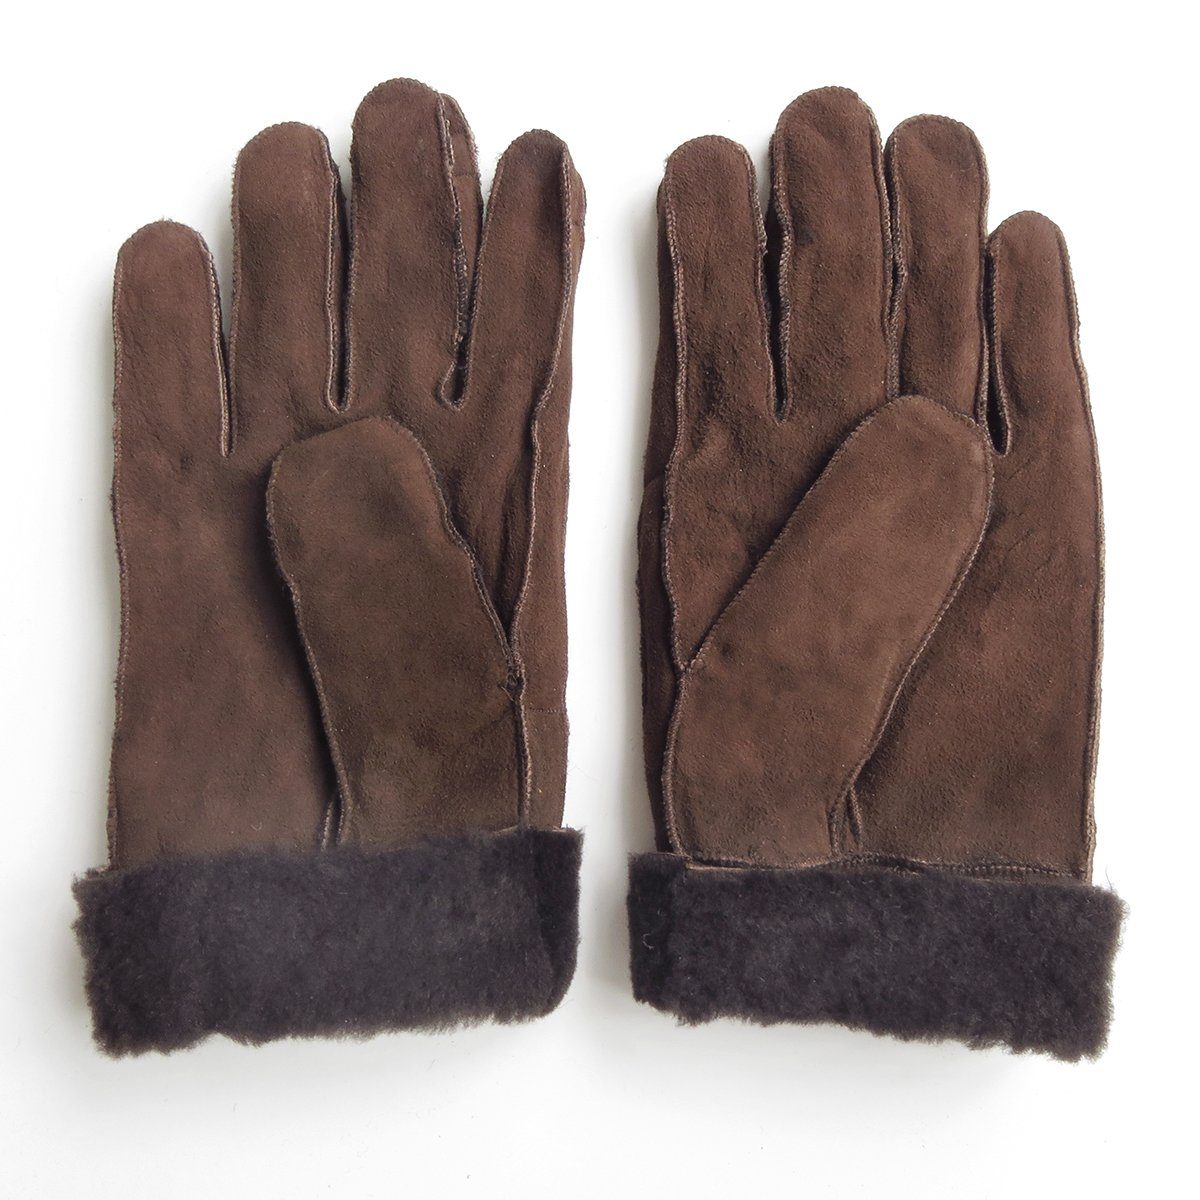 Sonia Originelli Winter-Arbeitshandschuhe Handschuhe aus Lammfell des unisex Schaffell abweichen Fells Farben hochwertig abweichen, warm dunkelbraun Struktur kann können